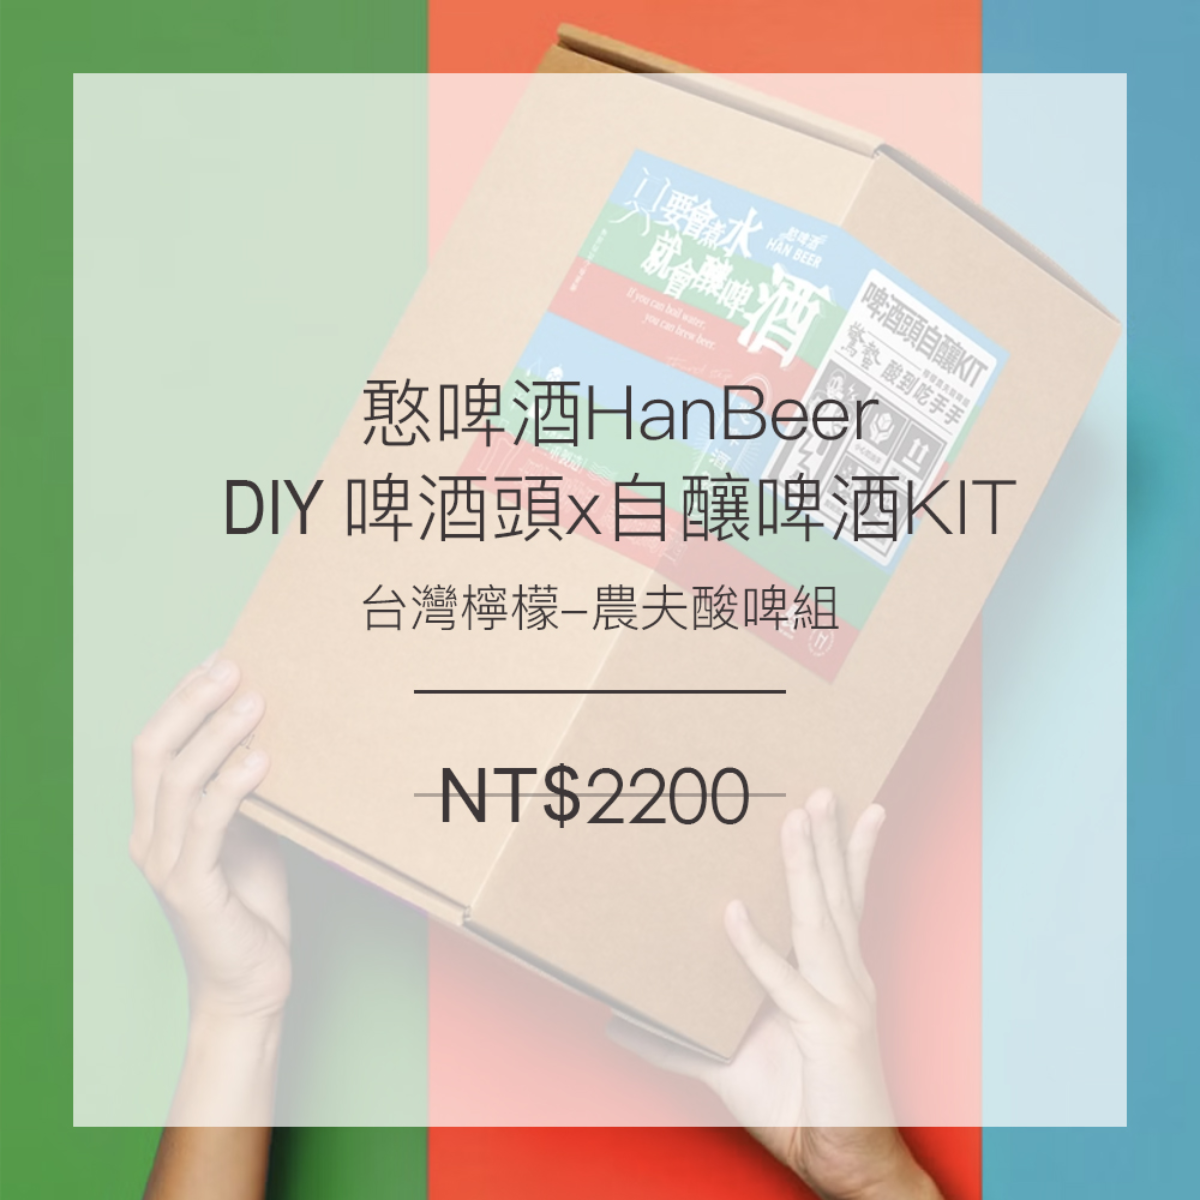 【DIY】啤酒頭x自釀KIT 台灣檸檬-農夫酸啤組